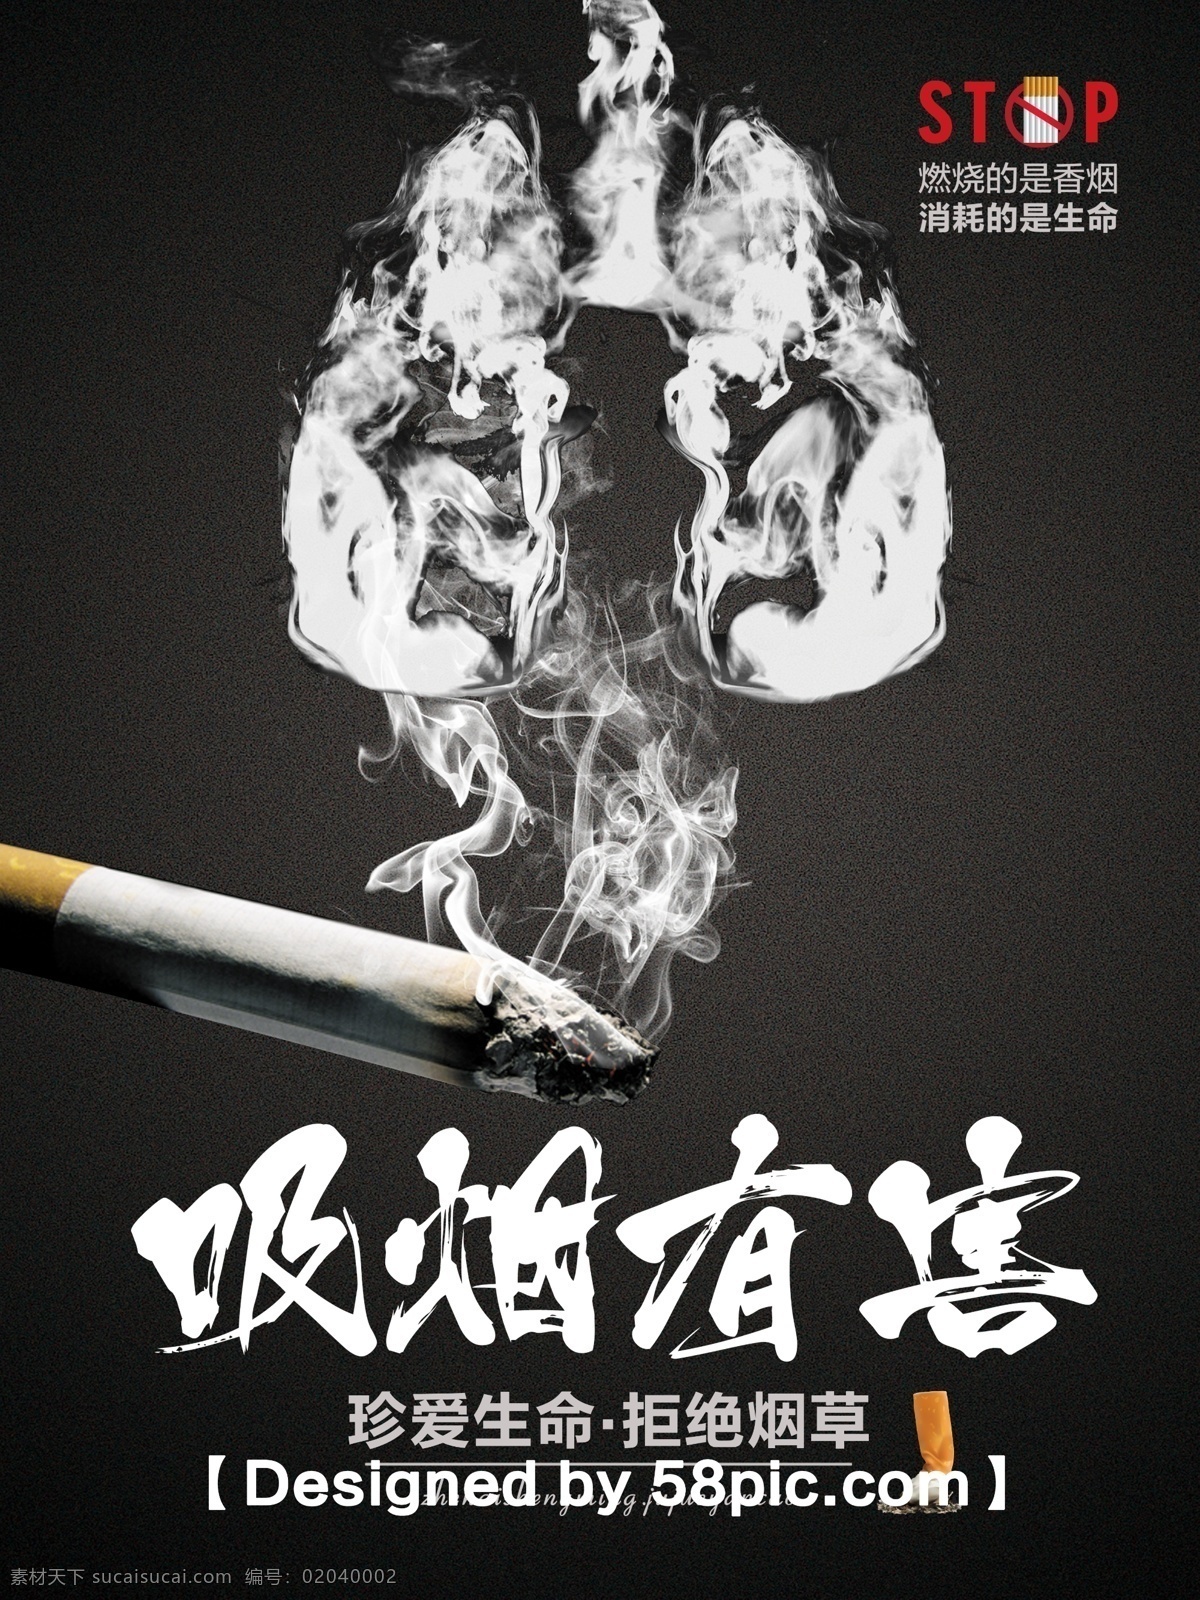 简约 世界 无烟日 宣传 推广 海报 世界无烟日 psd素材 吸烟有害健康 肺 香烟 烟雾 禁止吸烟 公益 广告设计模板